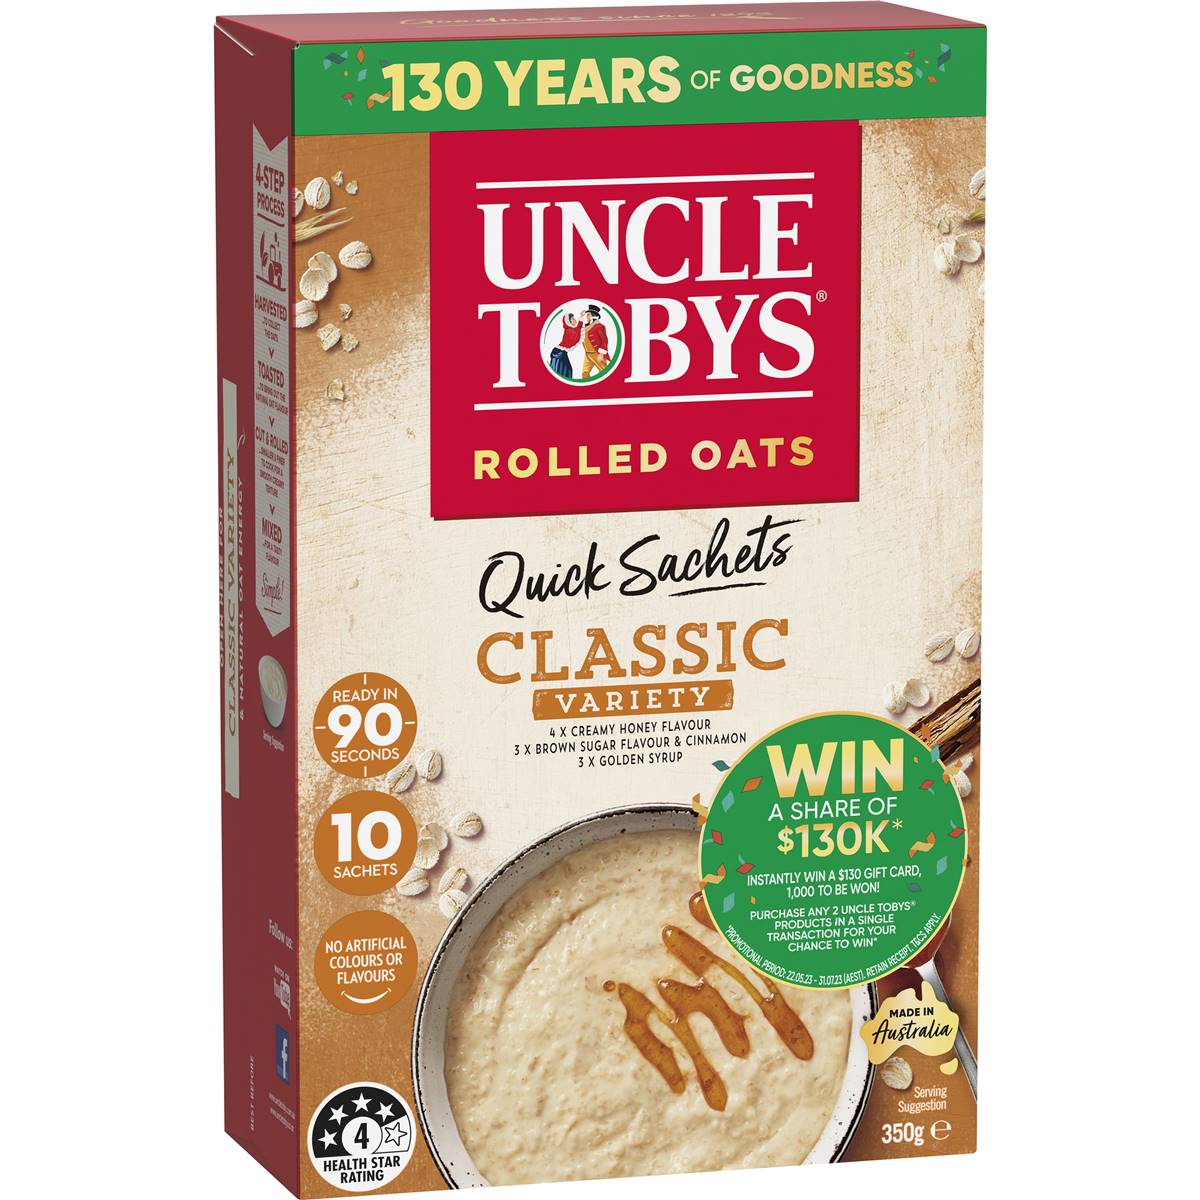 Uncle Tobys Oats Quick Sachets Classic Variety Porridge 10x35g